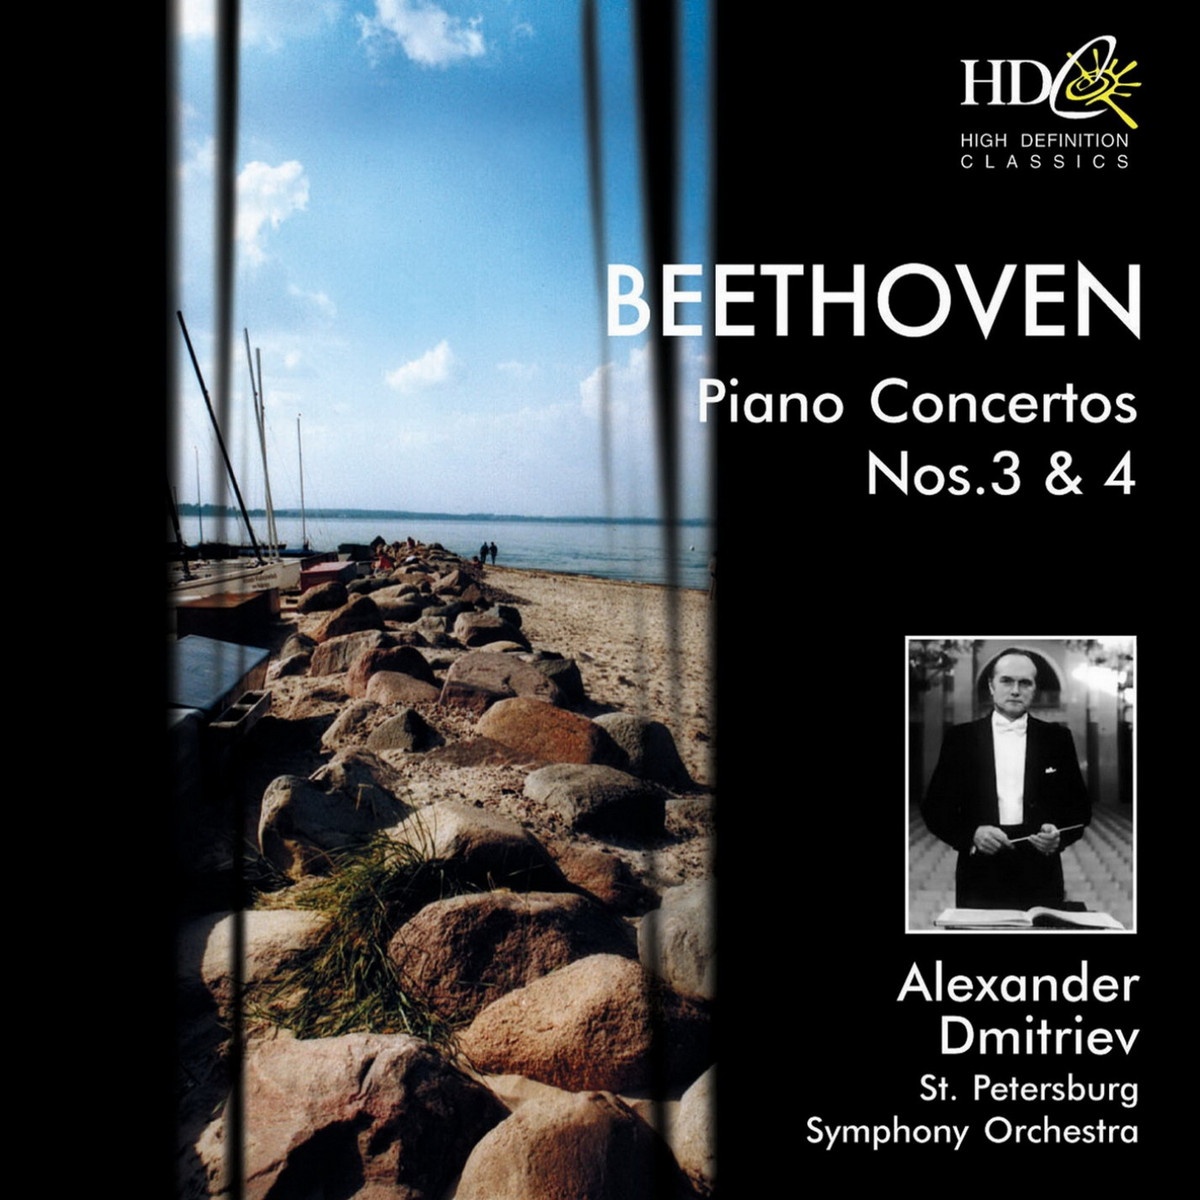 Piano Concerto No.3 in C Minor, Op. 37 : I. Allegro con brio